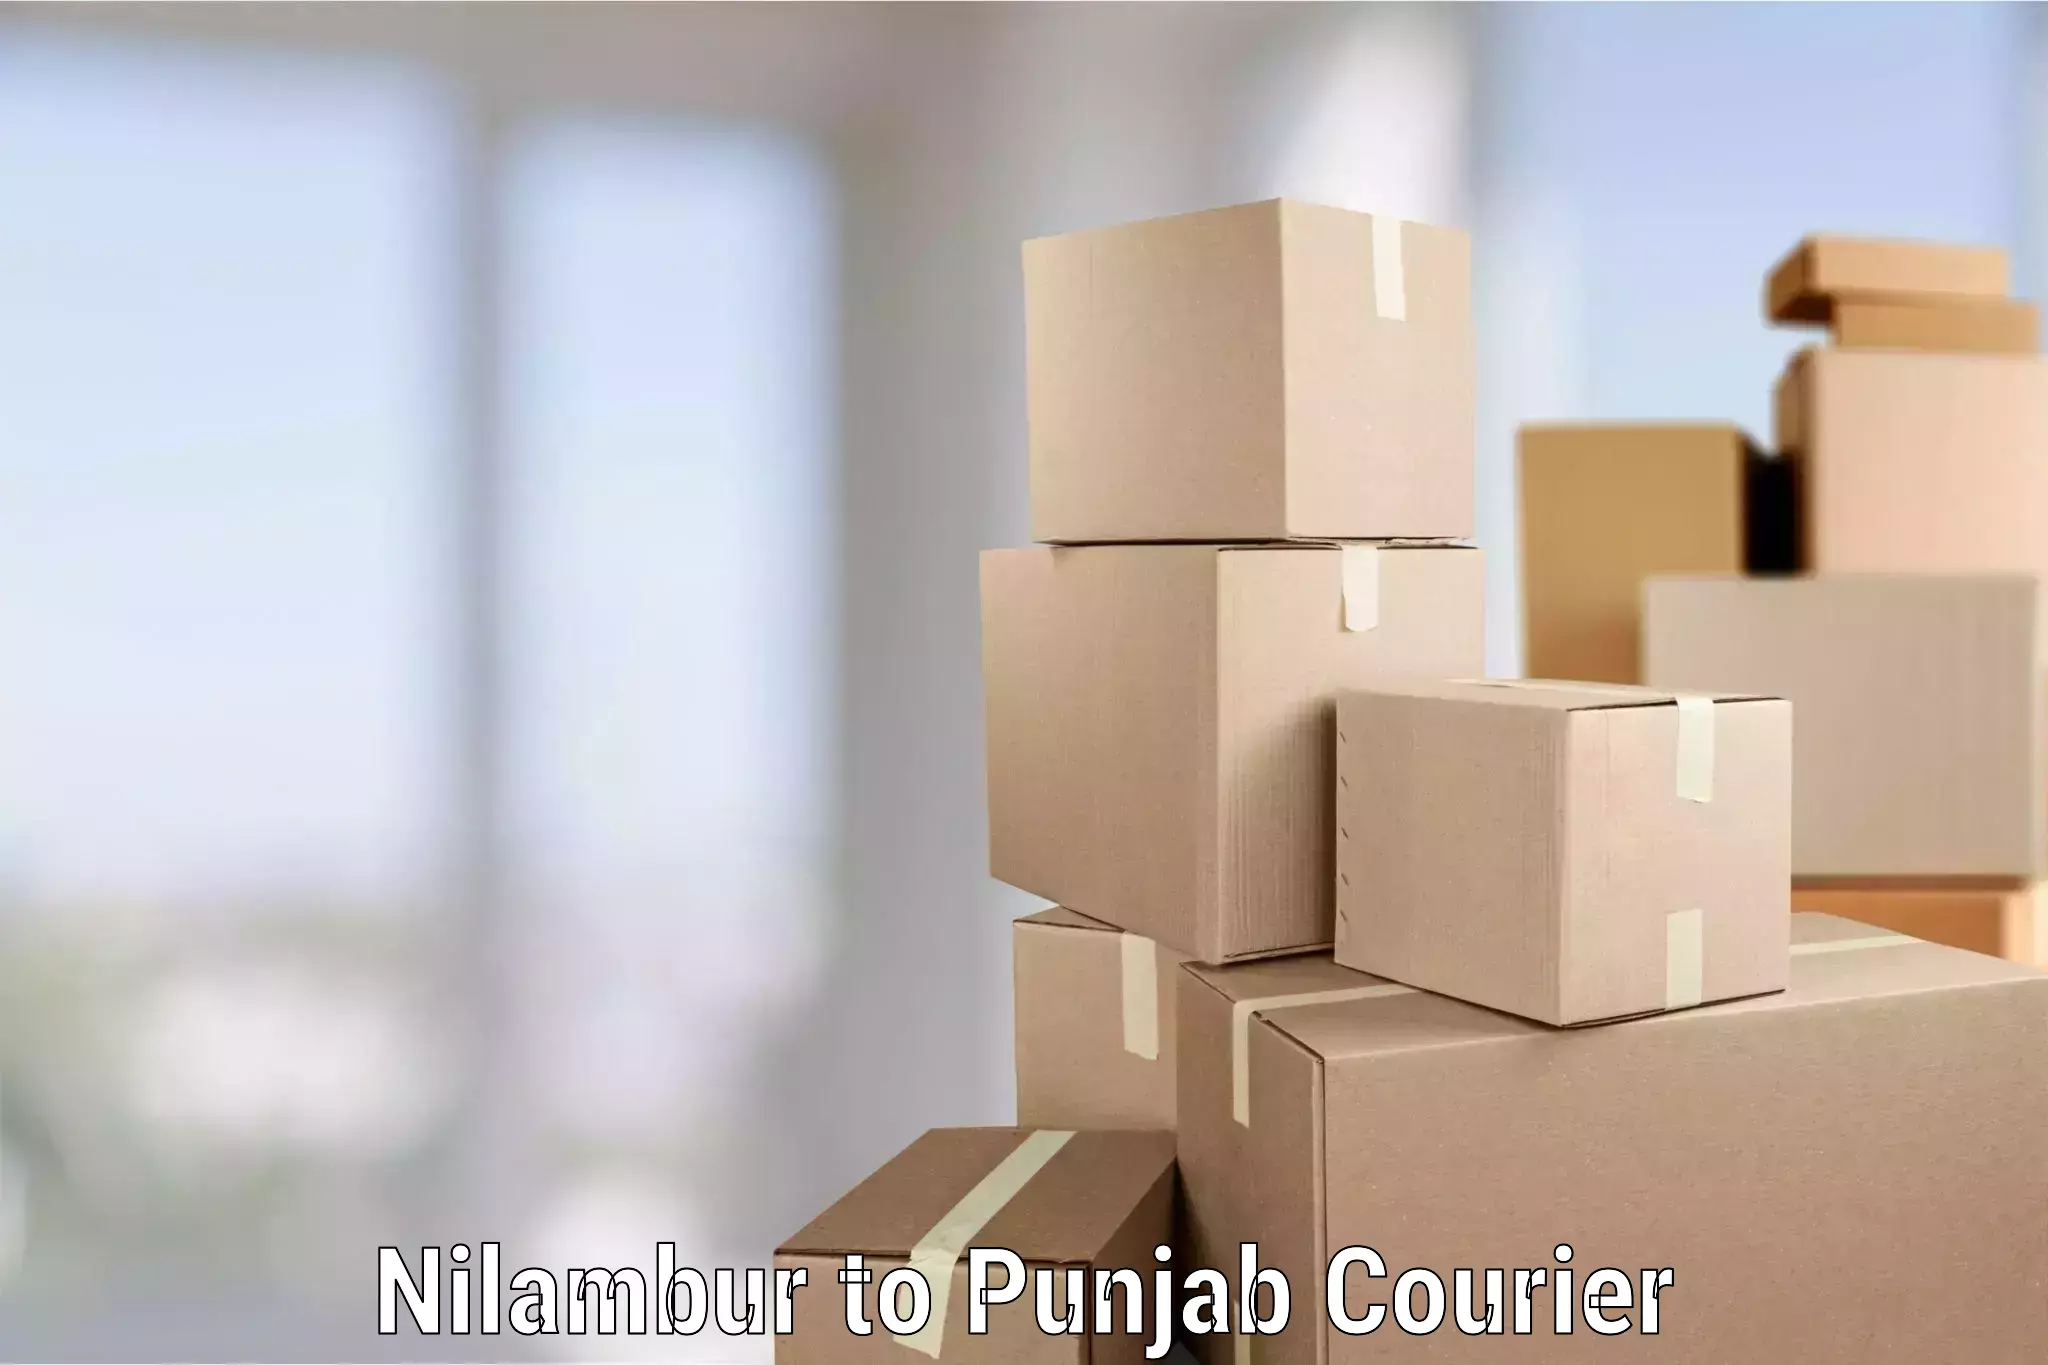 Furniture moving service in Nilambur to Punjab